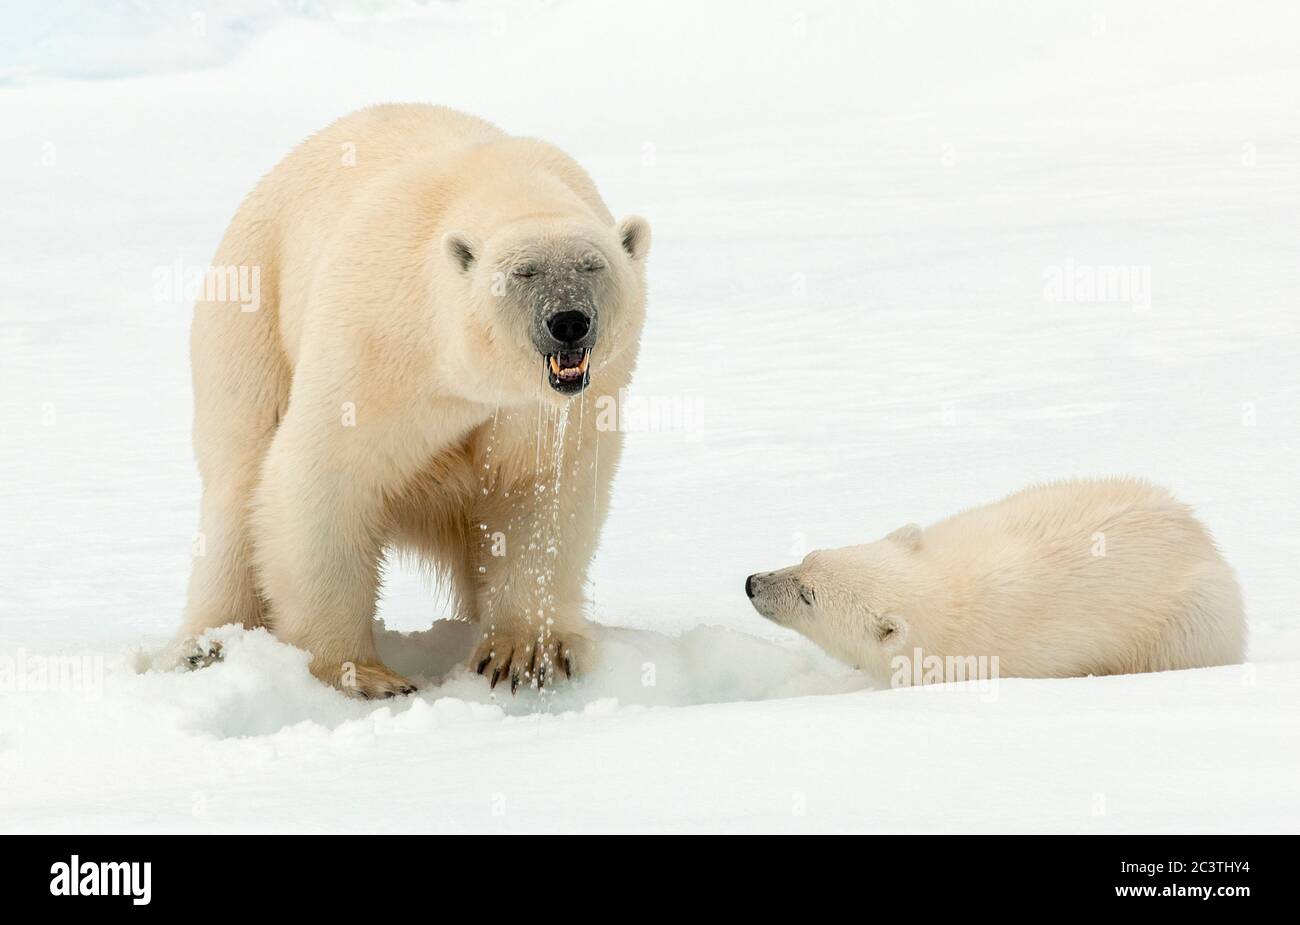 Orso polare (Ursus maritimus), l'arice polare si trova sul ghiaccio pacchetto e tirando la testa fuori un buco d'acqua, orso polare cucciolo guardando la sua madre, Norvegia, Svalbard Foto Stock